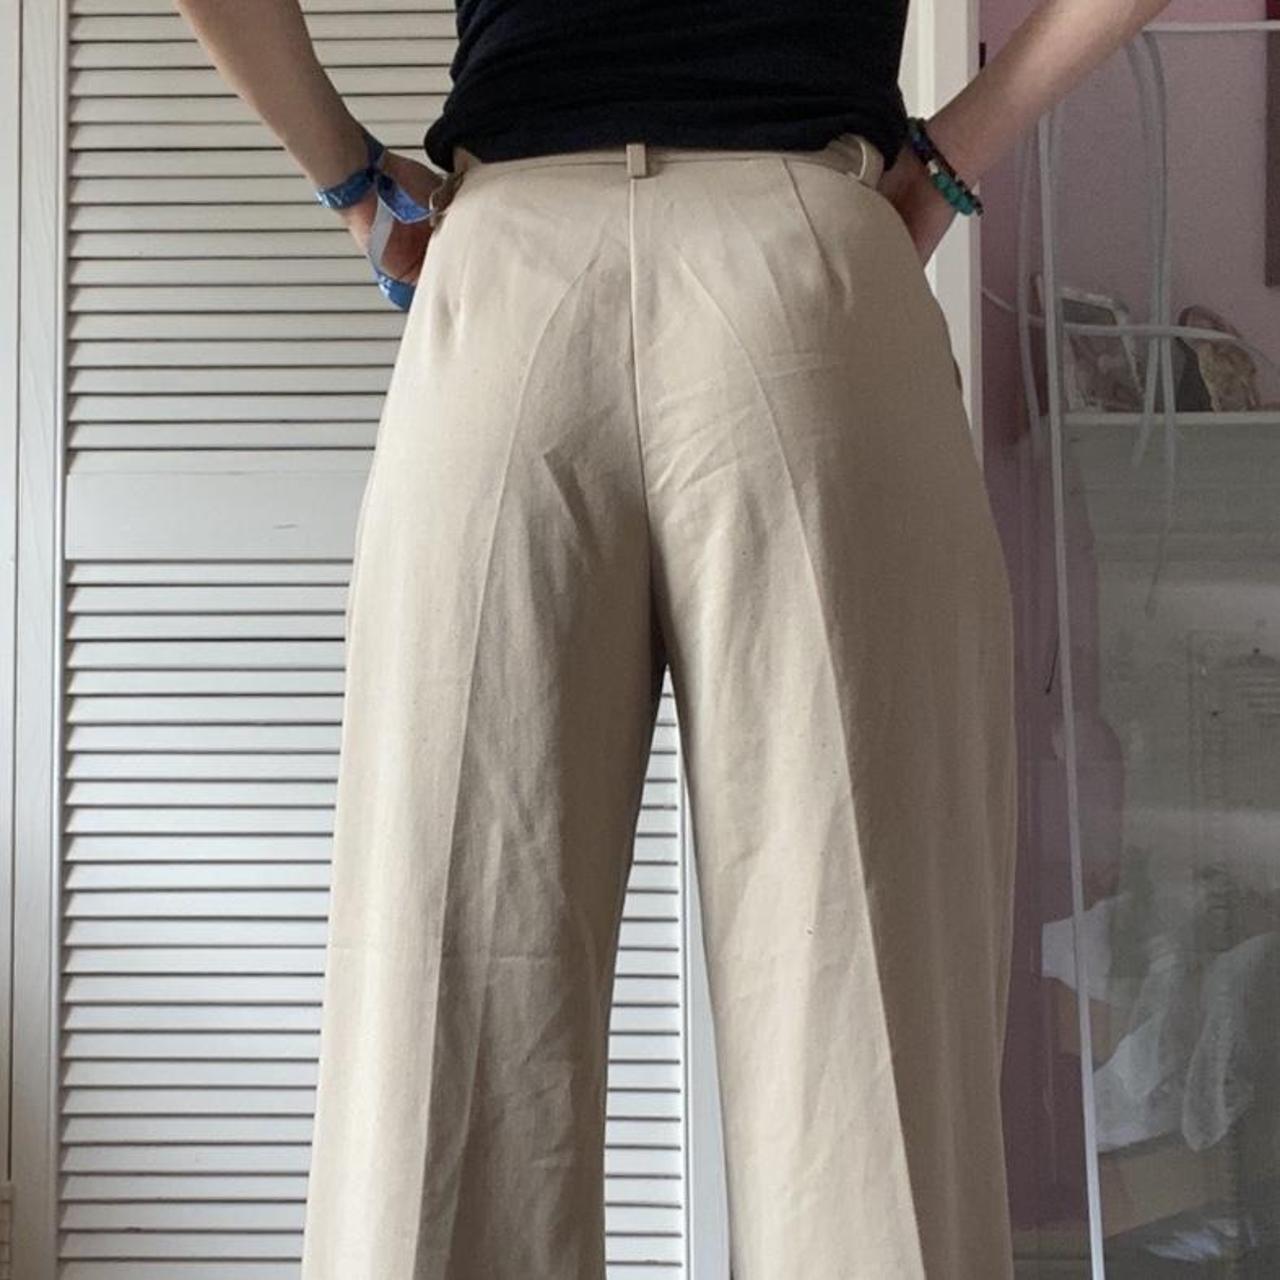 Motel Rocks parallel/abba trousers in tan - size XS... - Depop